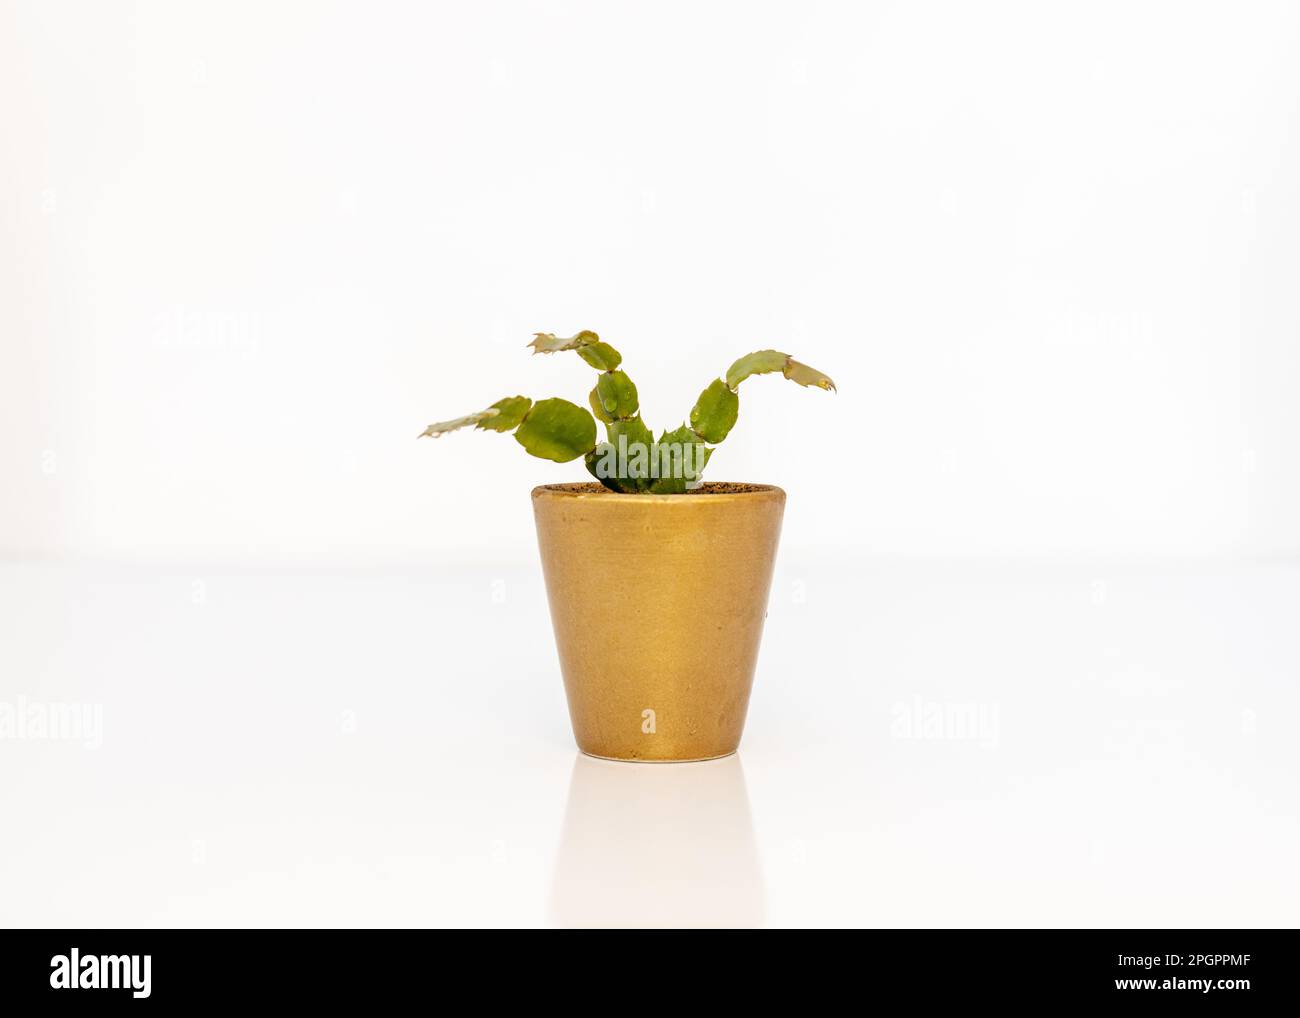 Christmas cactus plant Schlumbergera cactus in a beautiful golden pot Stock Photo